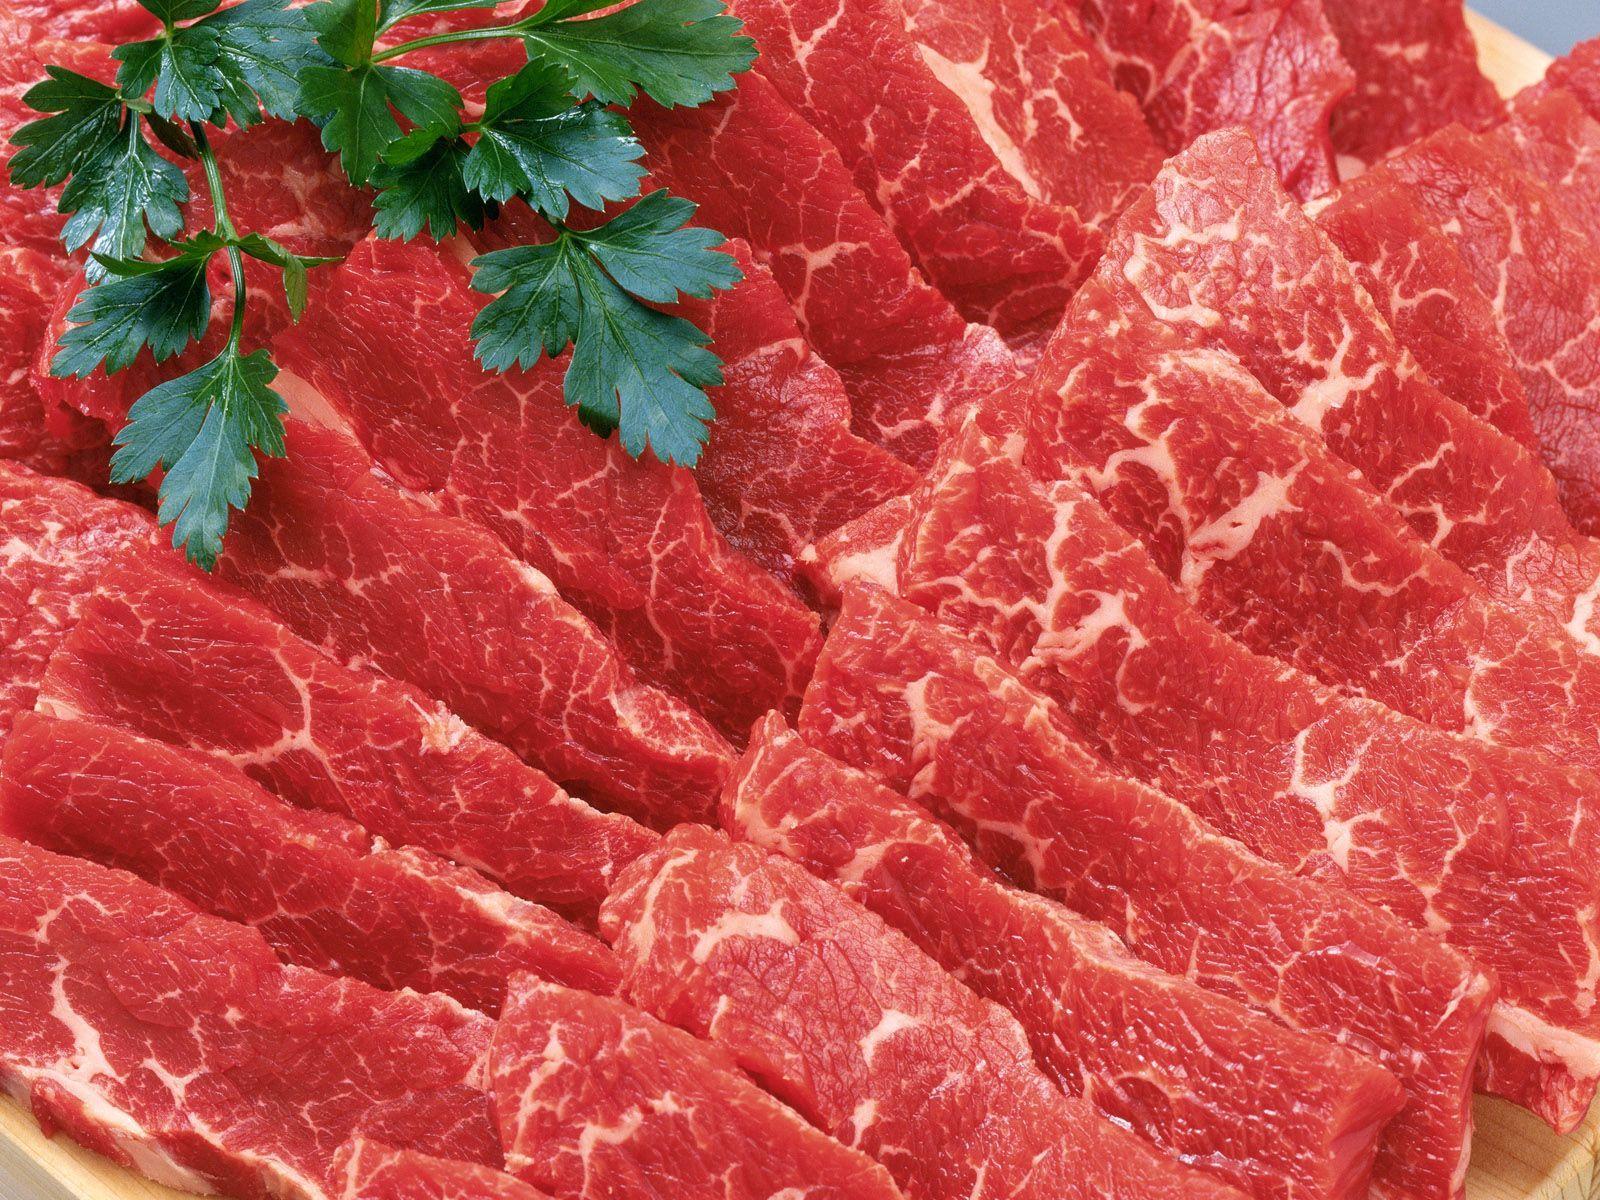 HD Widescreen Meat Wallpaper. Fine Meat Photo